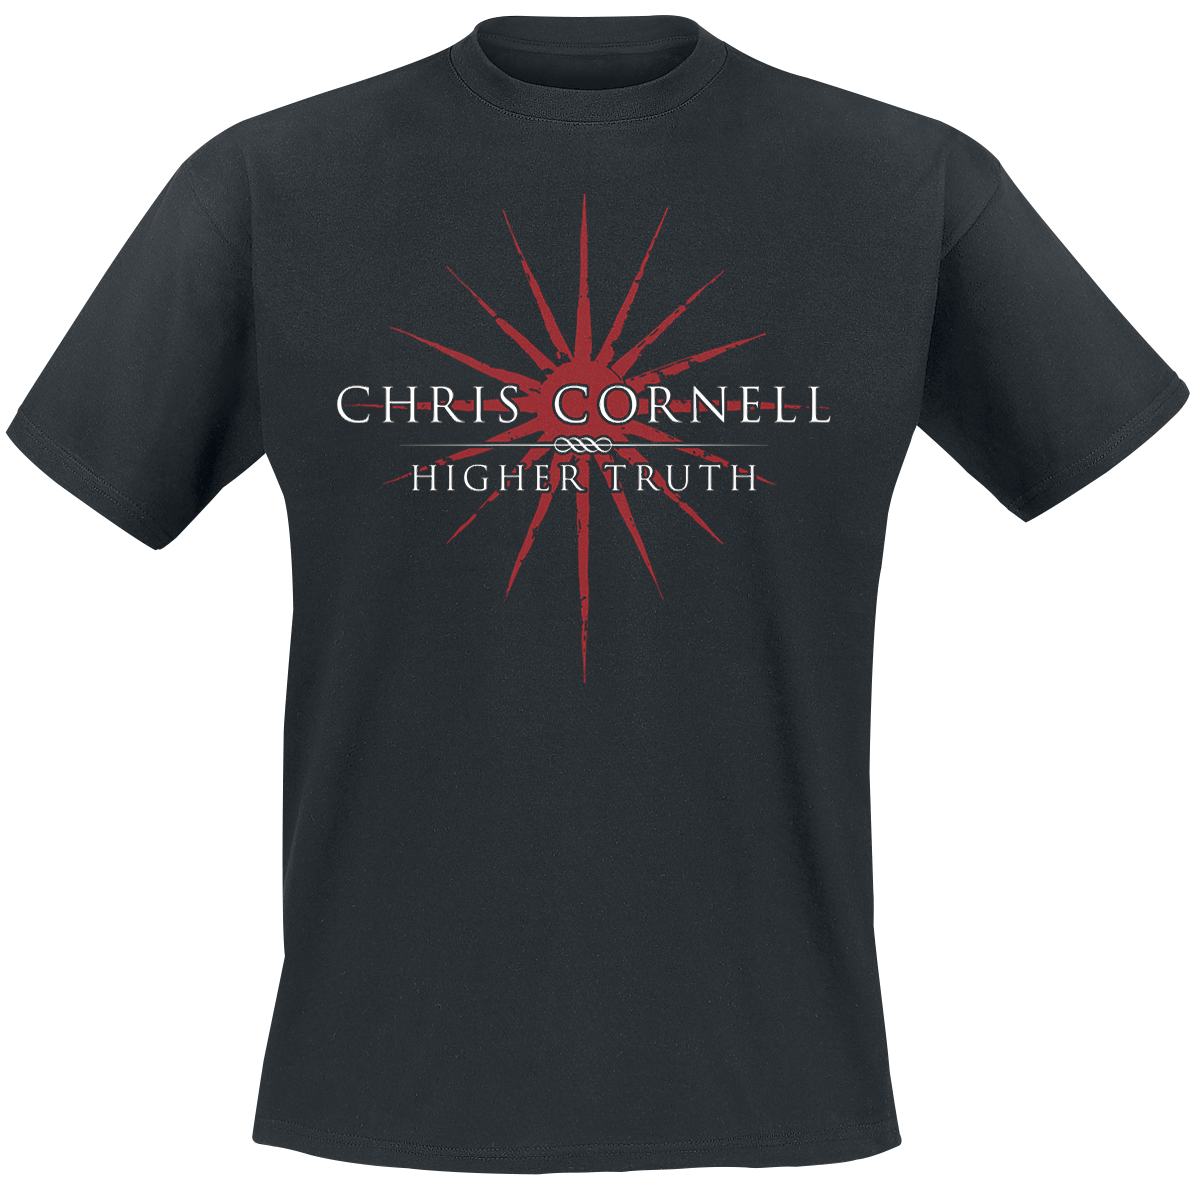 Chris Cornell - Higher Truth - T-Shirt - black image